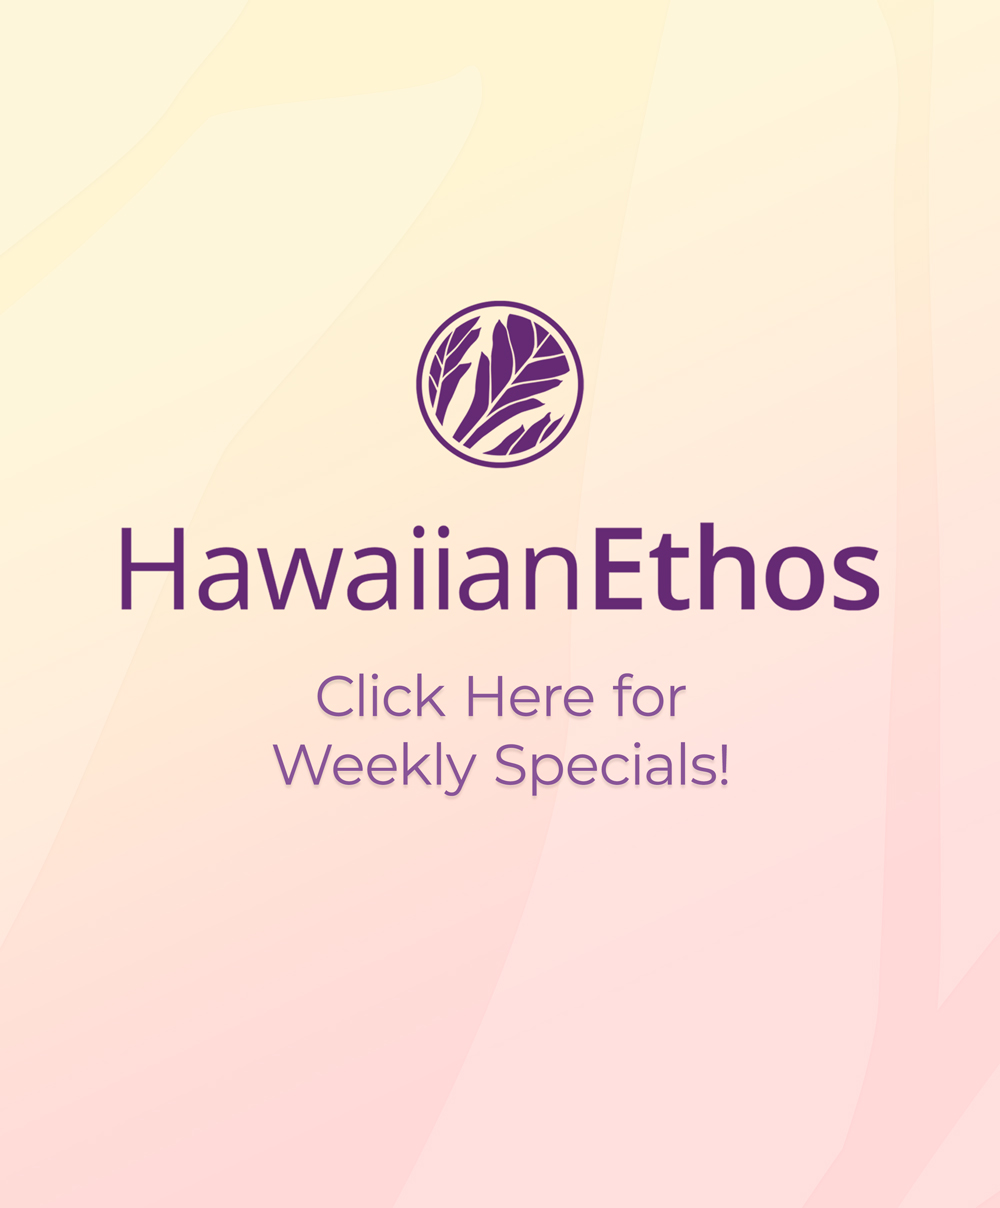 Hawaiian Ethos Waimea Specials